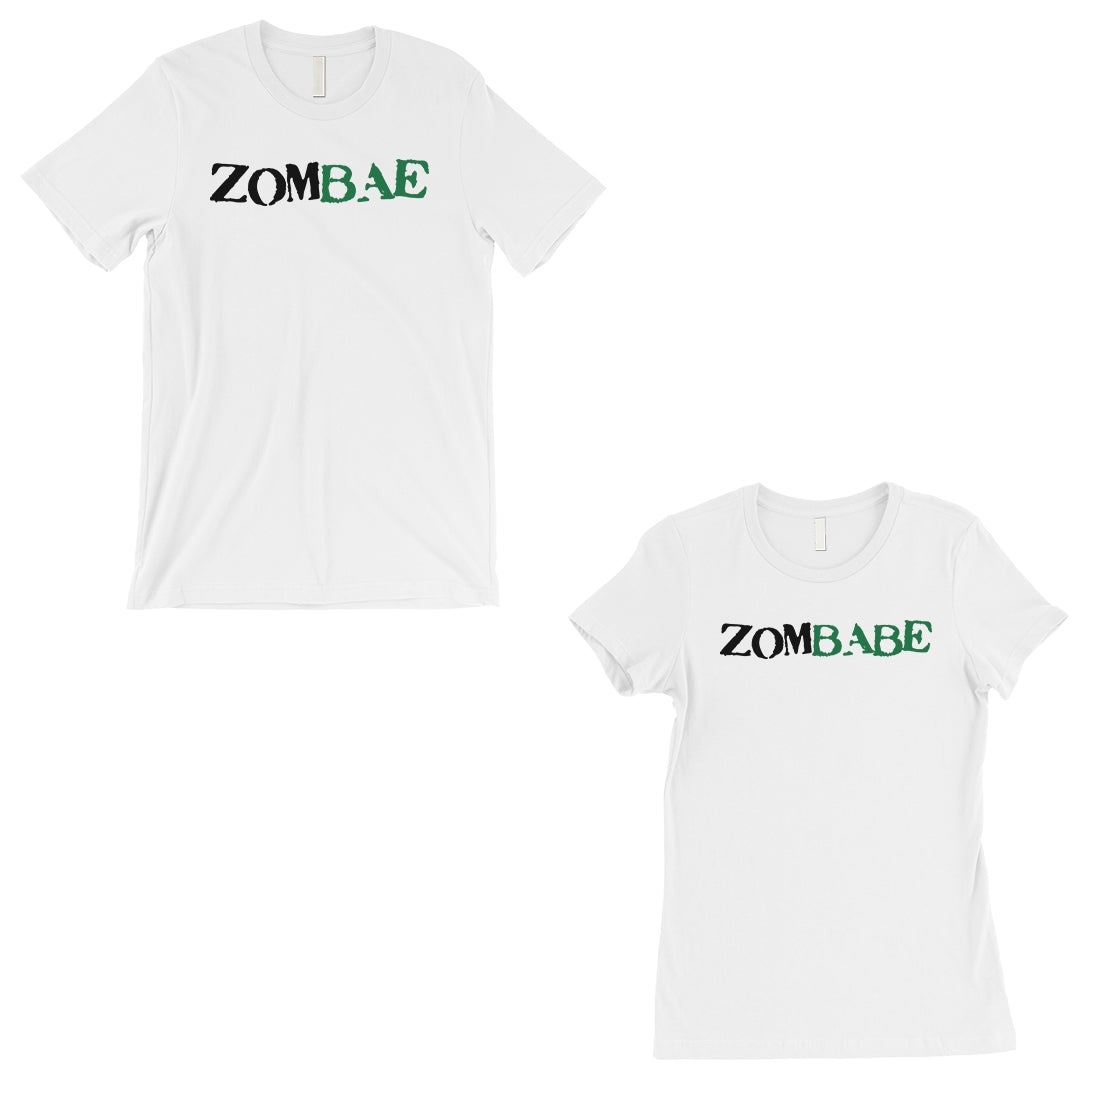 Zombae And Zombabe Matching Couple Gift Shirts White